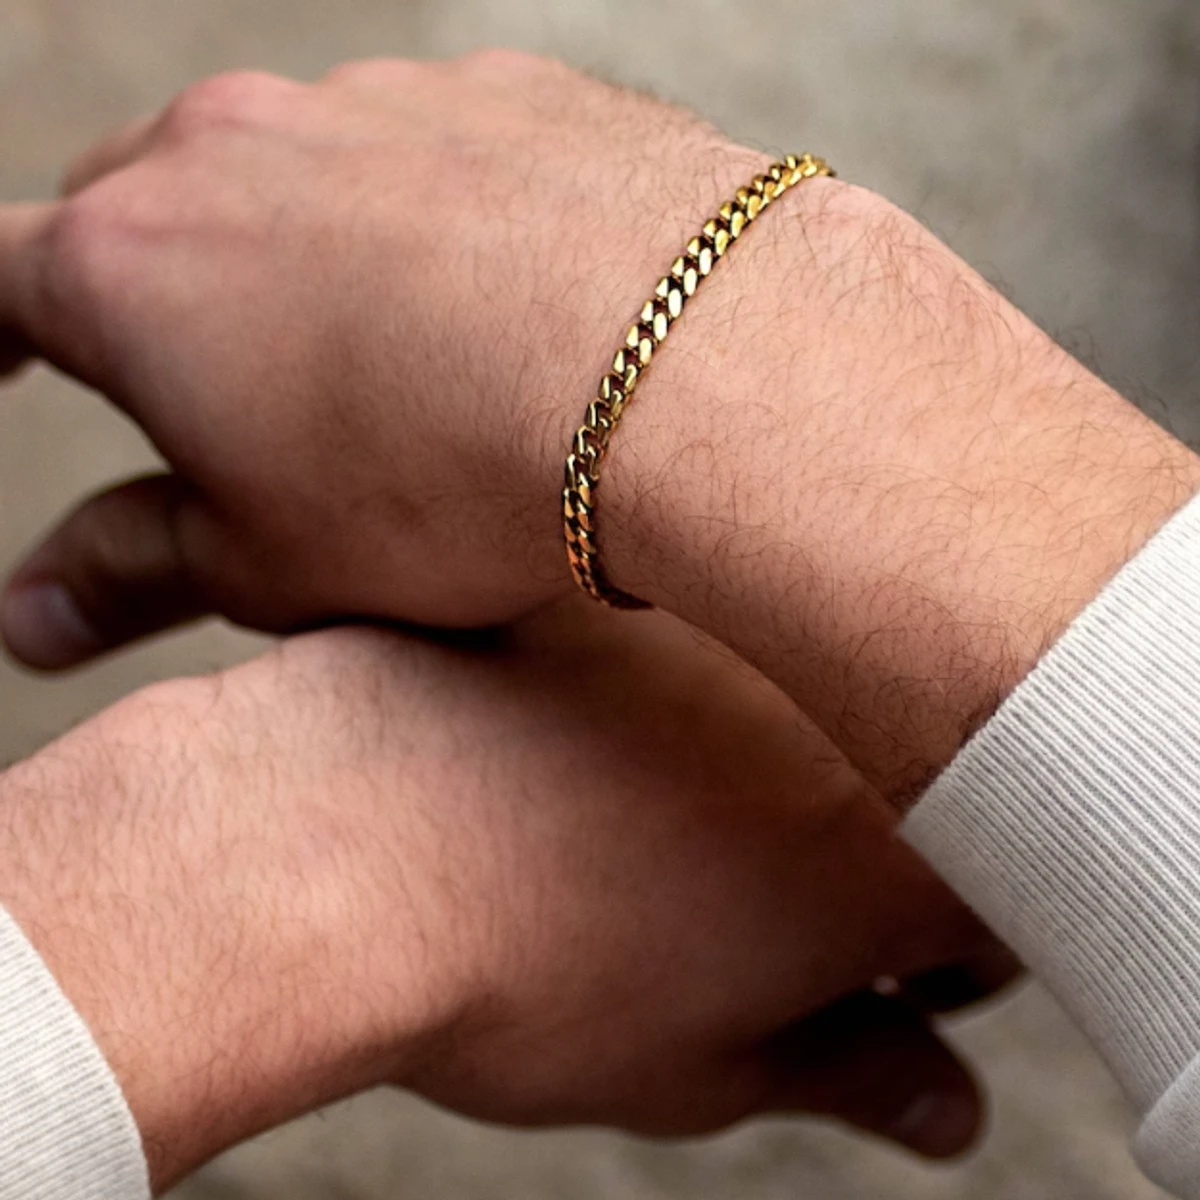 Fashionable Men's Gold Chain Bracelet